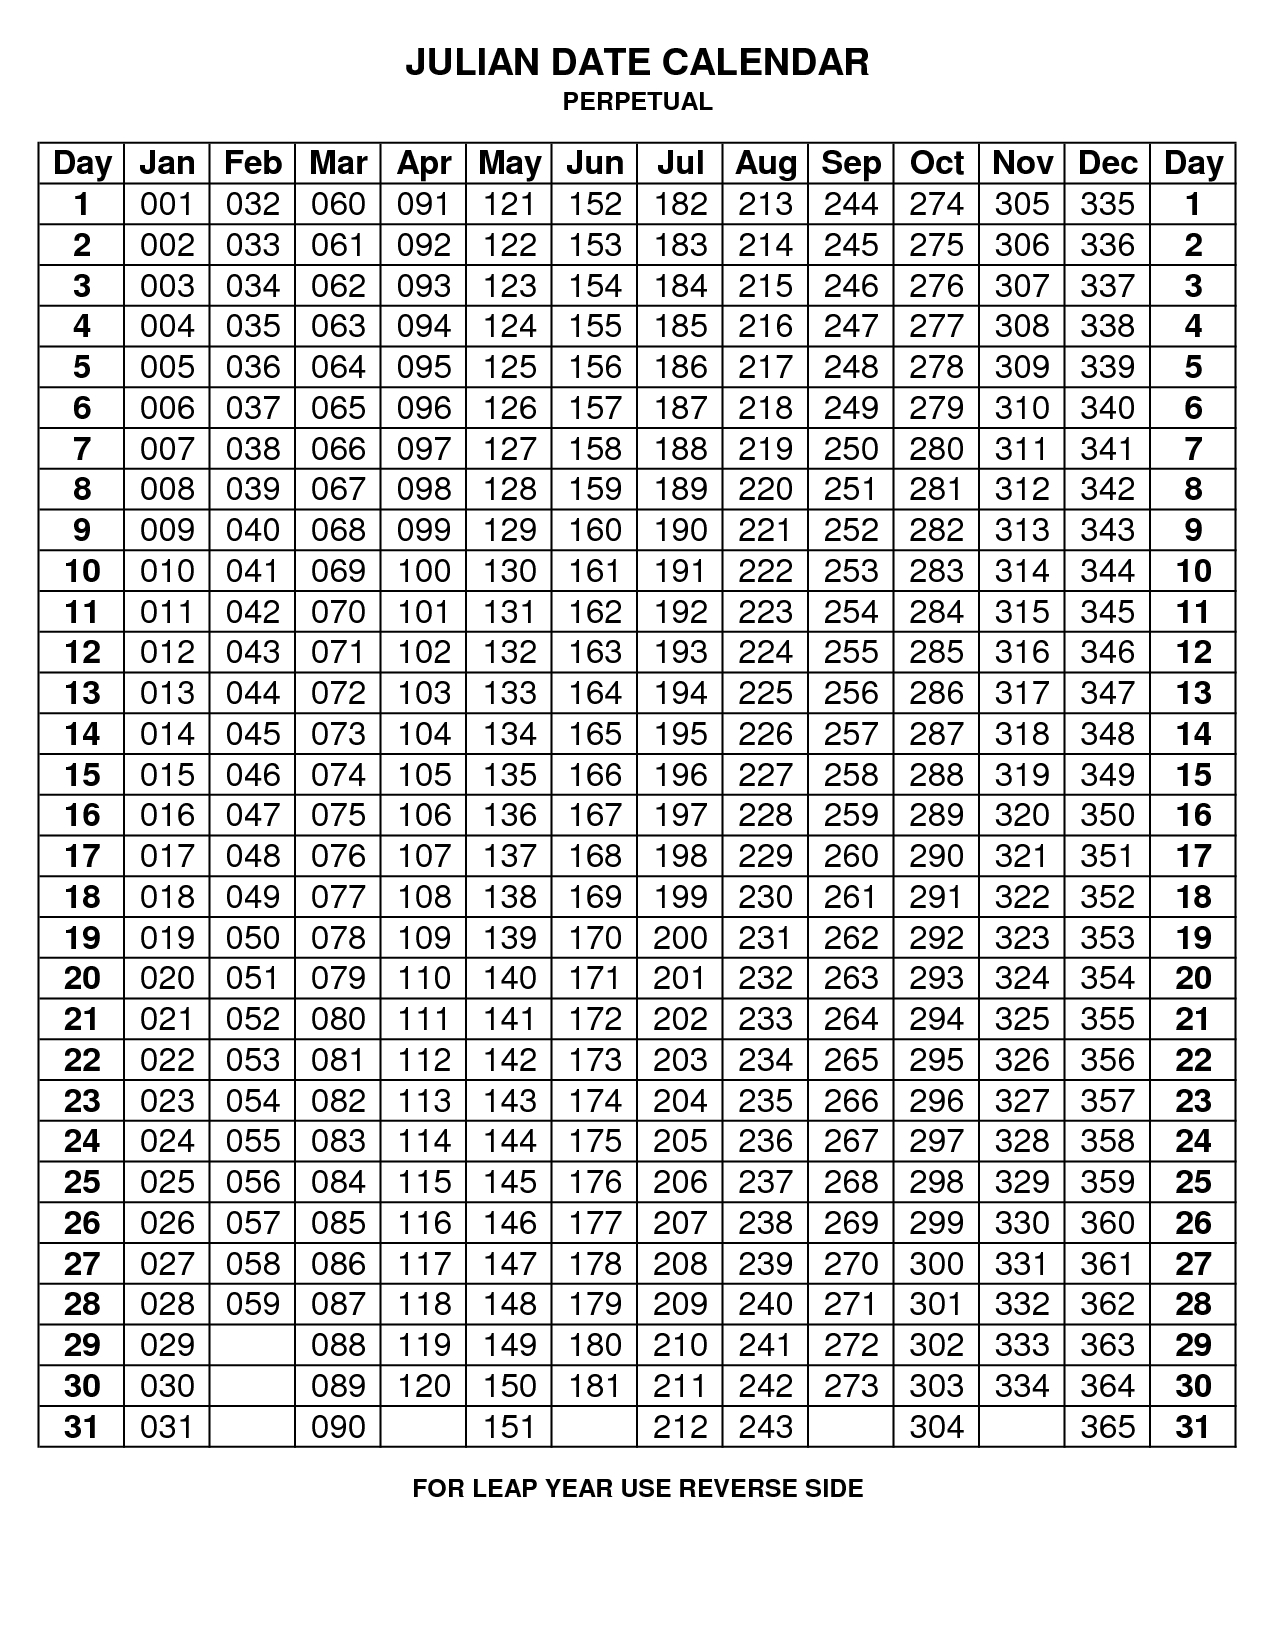 Julian Code - Non-Leap Year | Julian Dates, Calendar  Free Printable Leap Year Julian Date Calendar 2021